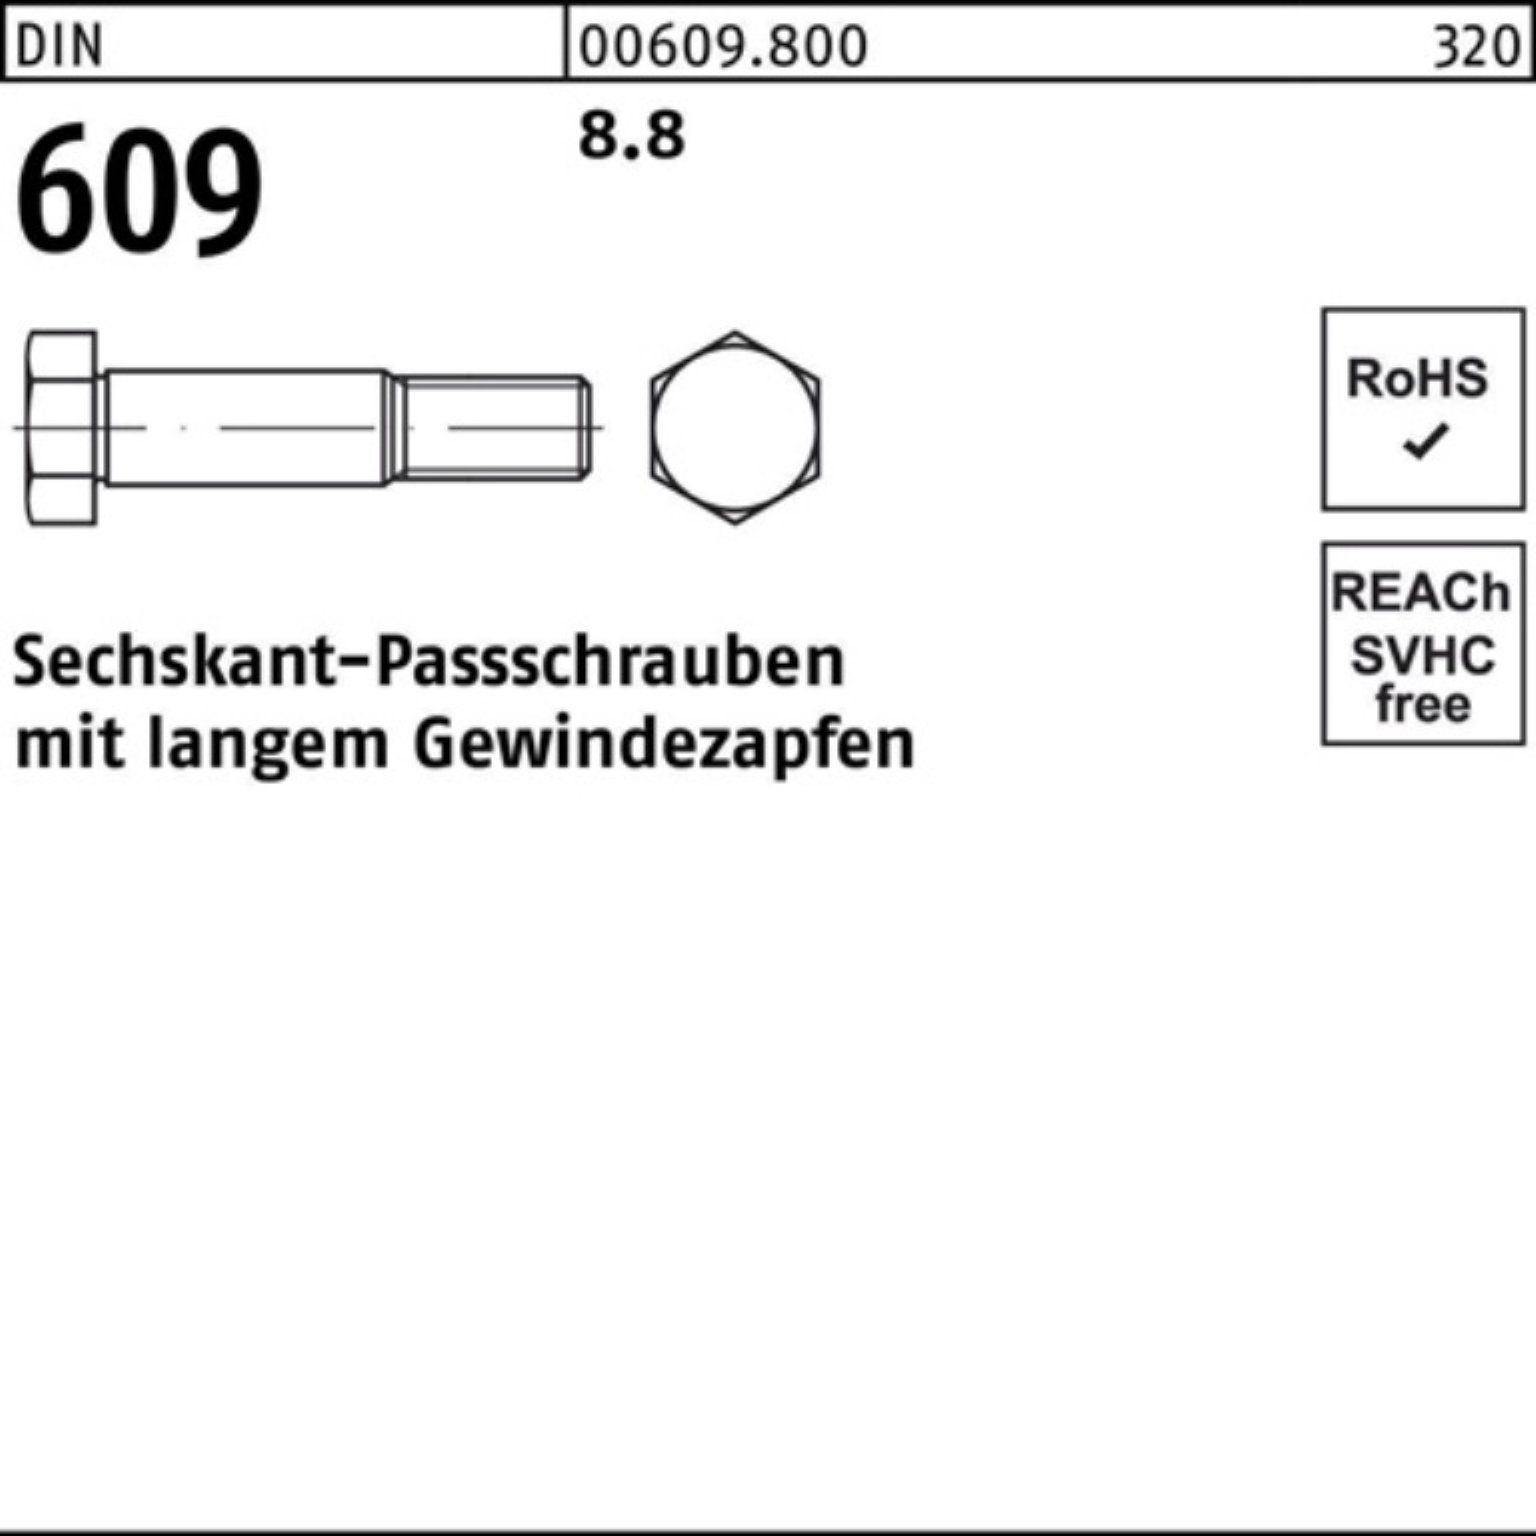 Online-Shopping Reyher Schraube 100er Pack Sechskantpassschraube Gewindezapfen langem M36x 90 DIN 609